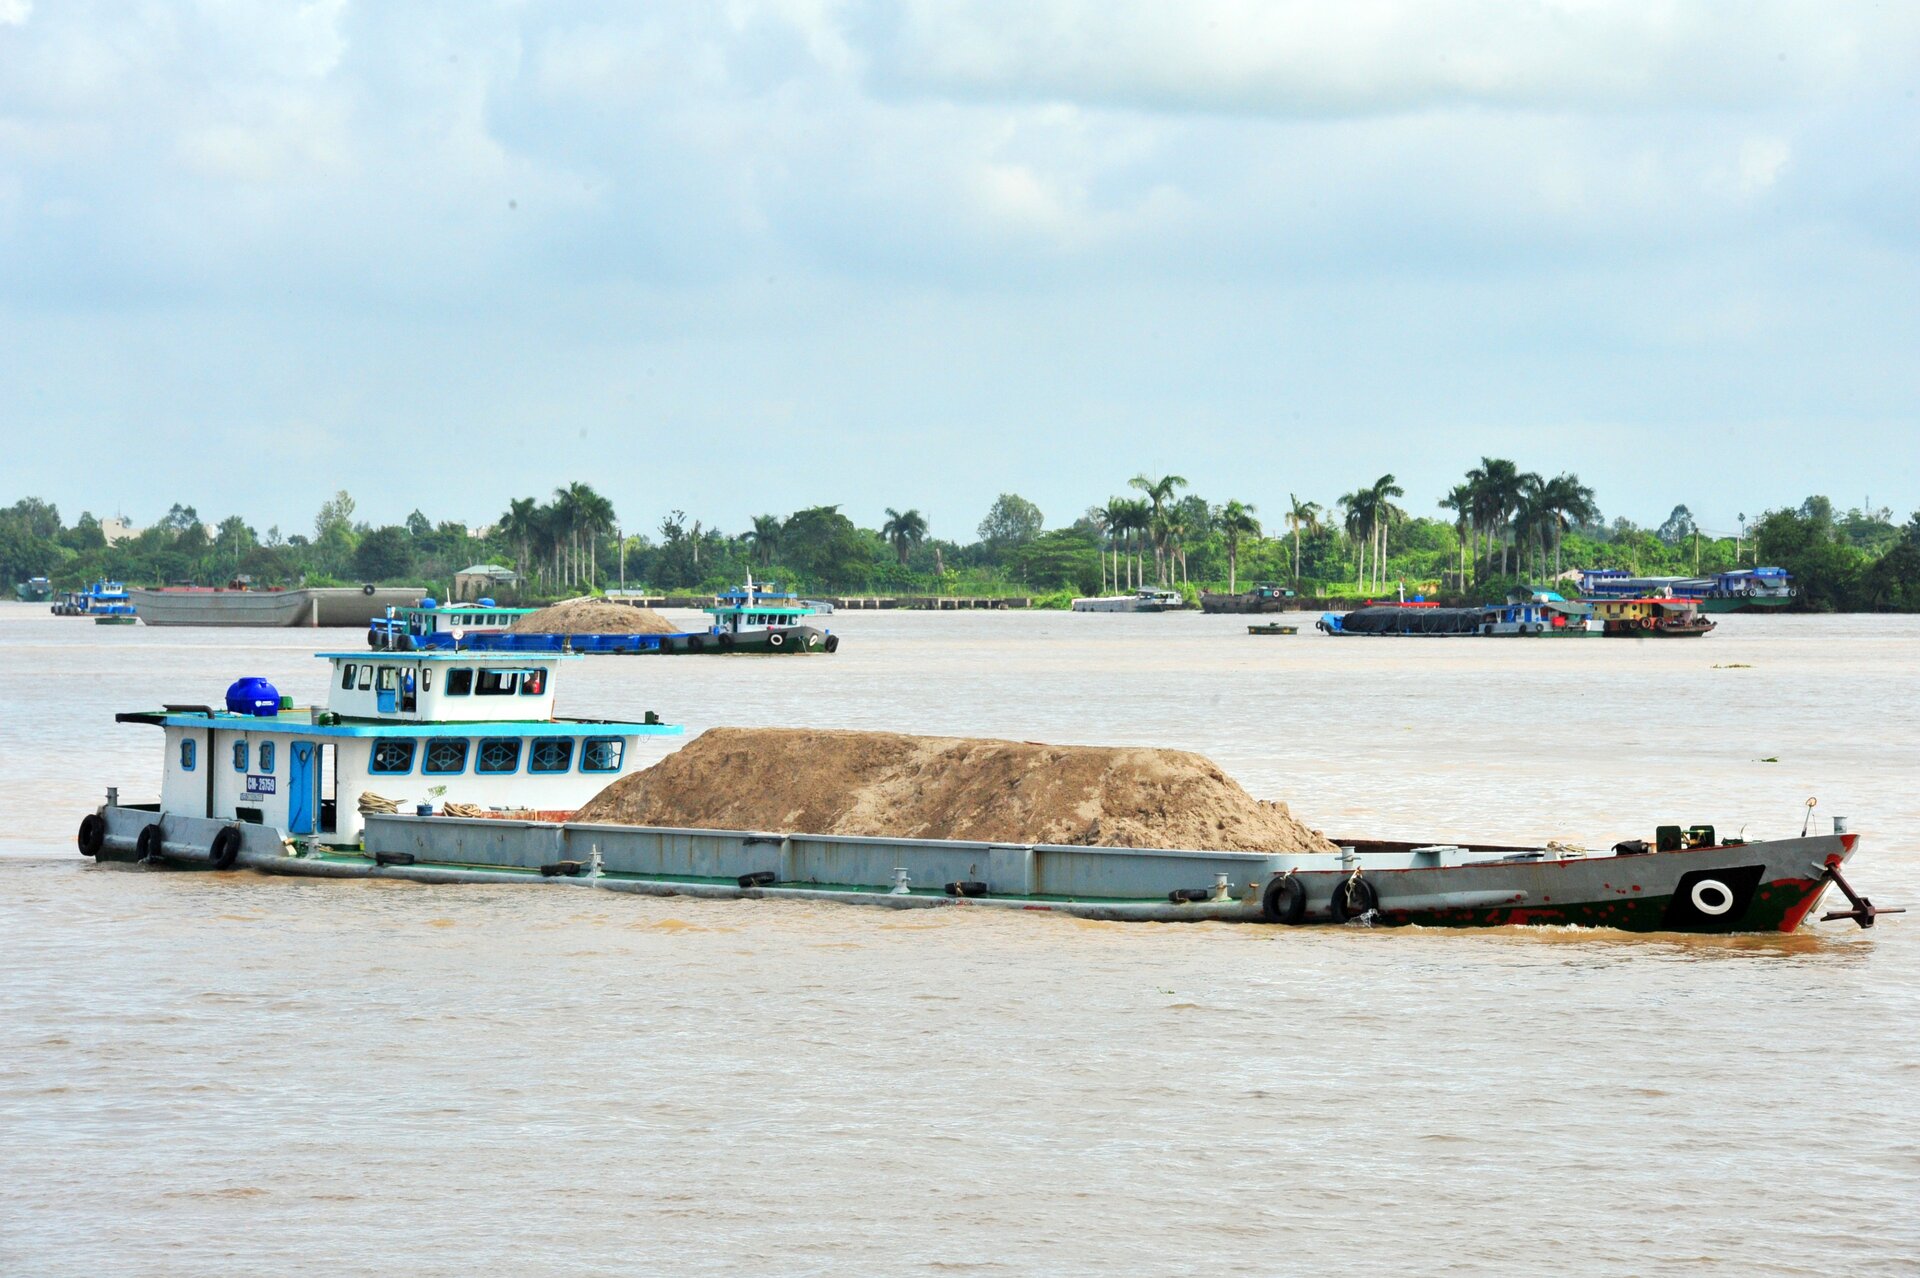 Cần có biện pháp quản lý để tránh việc khai thác cát tràn lan như hiện nay (ảnh: kinhtedothi.vn)